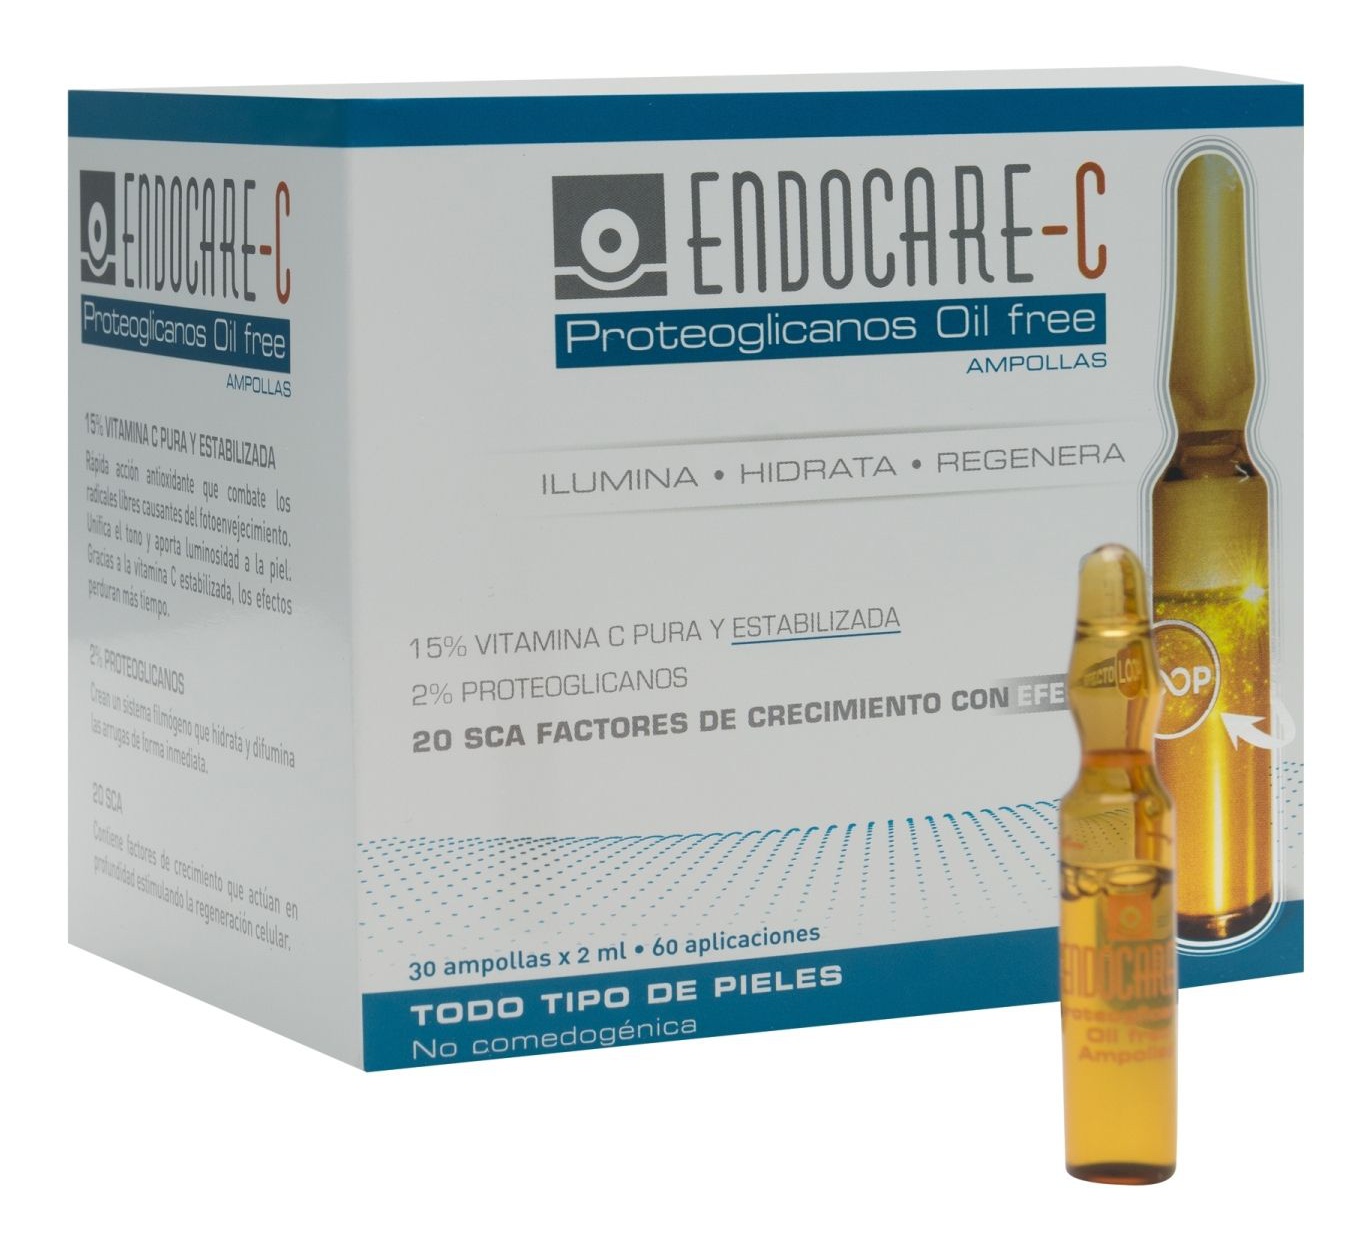 Endocare C Proteoglicanos Oil Free